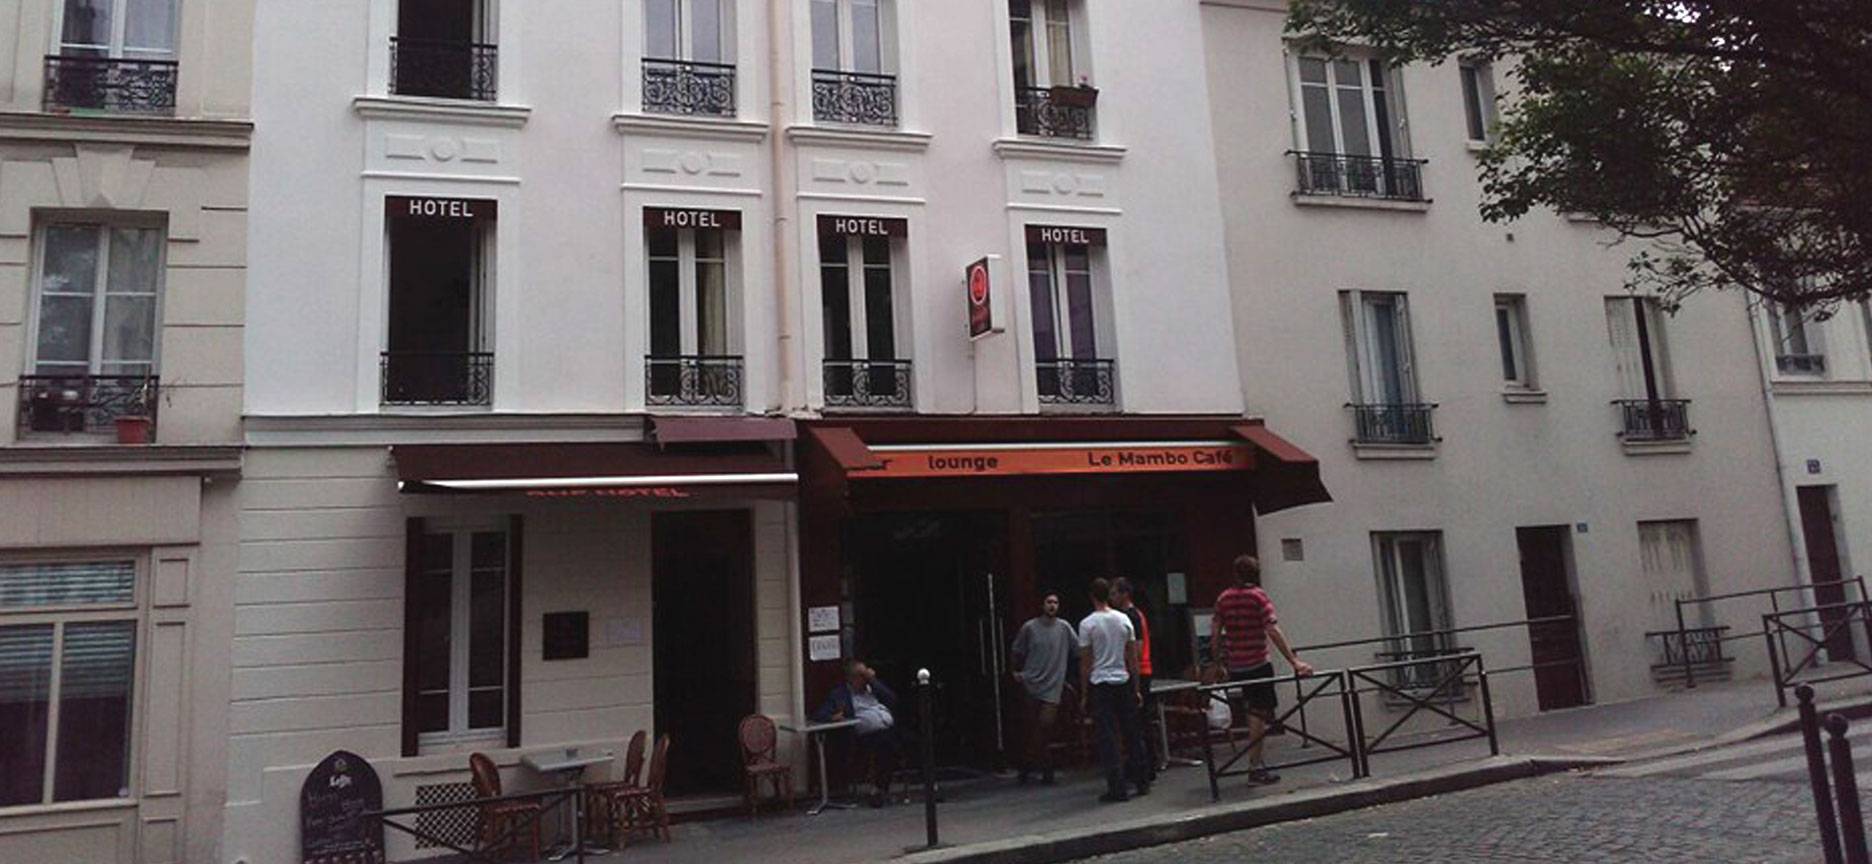 About BNF Hôtel & Mambo Café